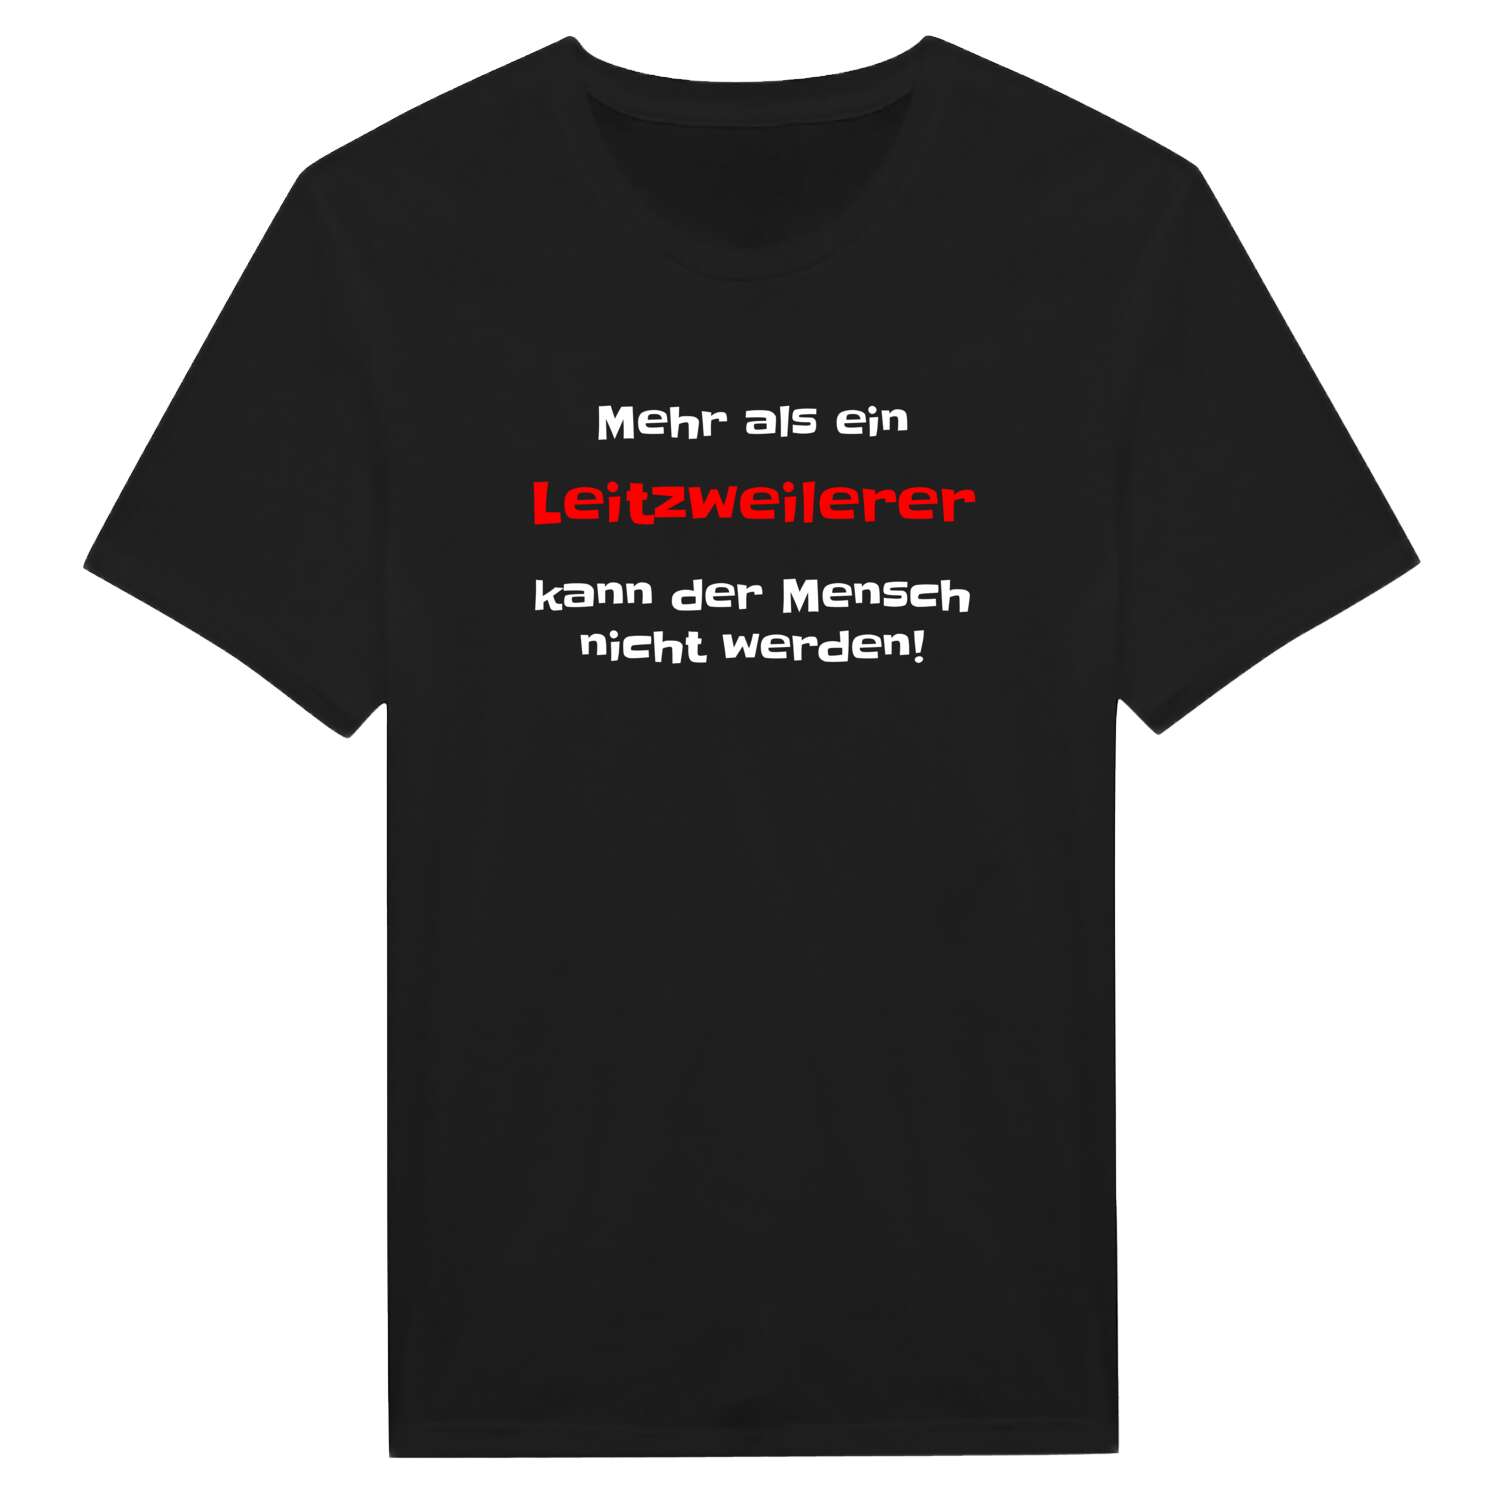 Leitzweiler T-Shirt »Mehr als ein«